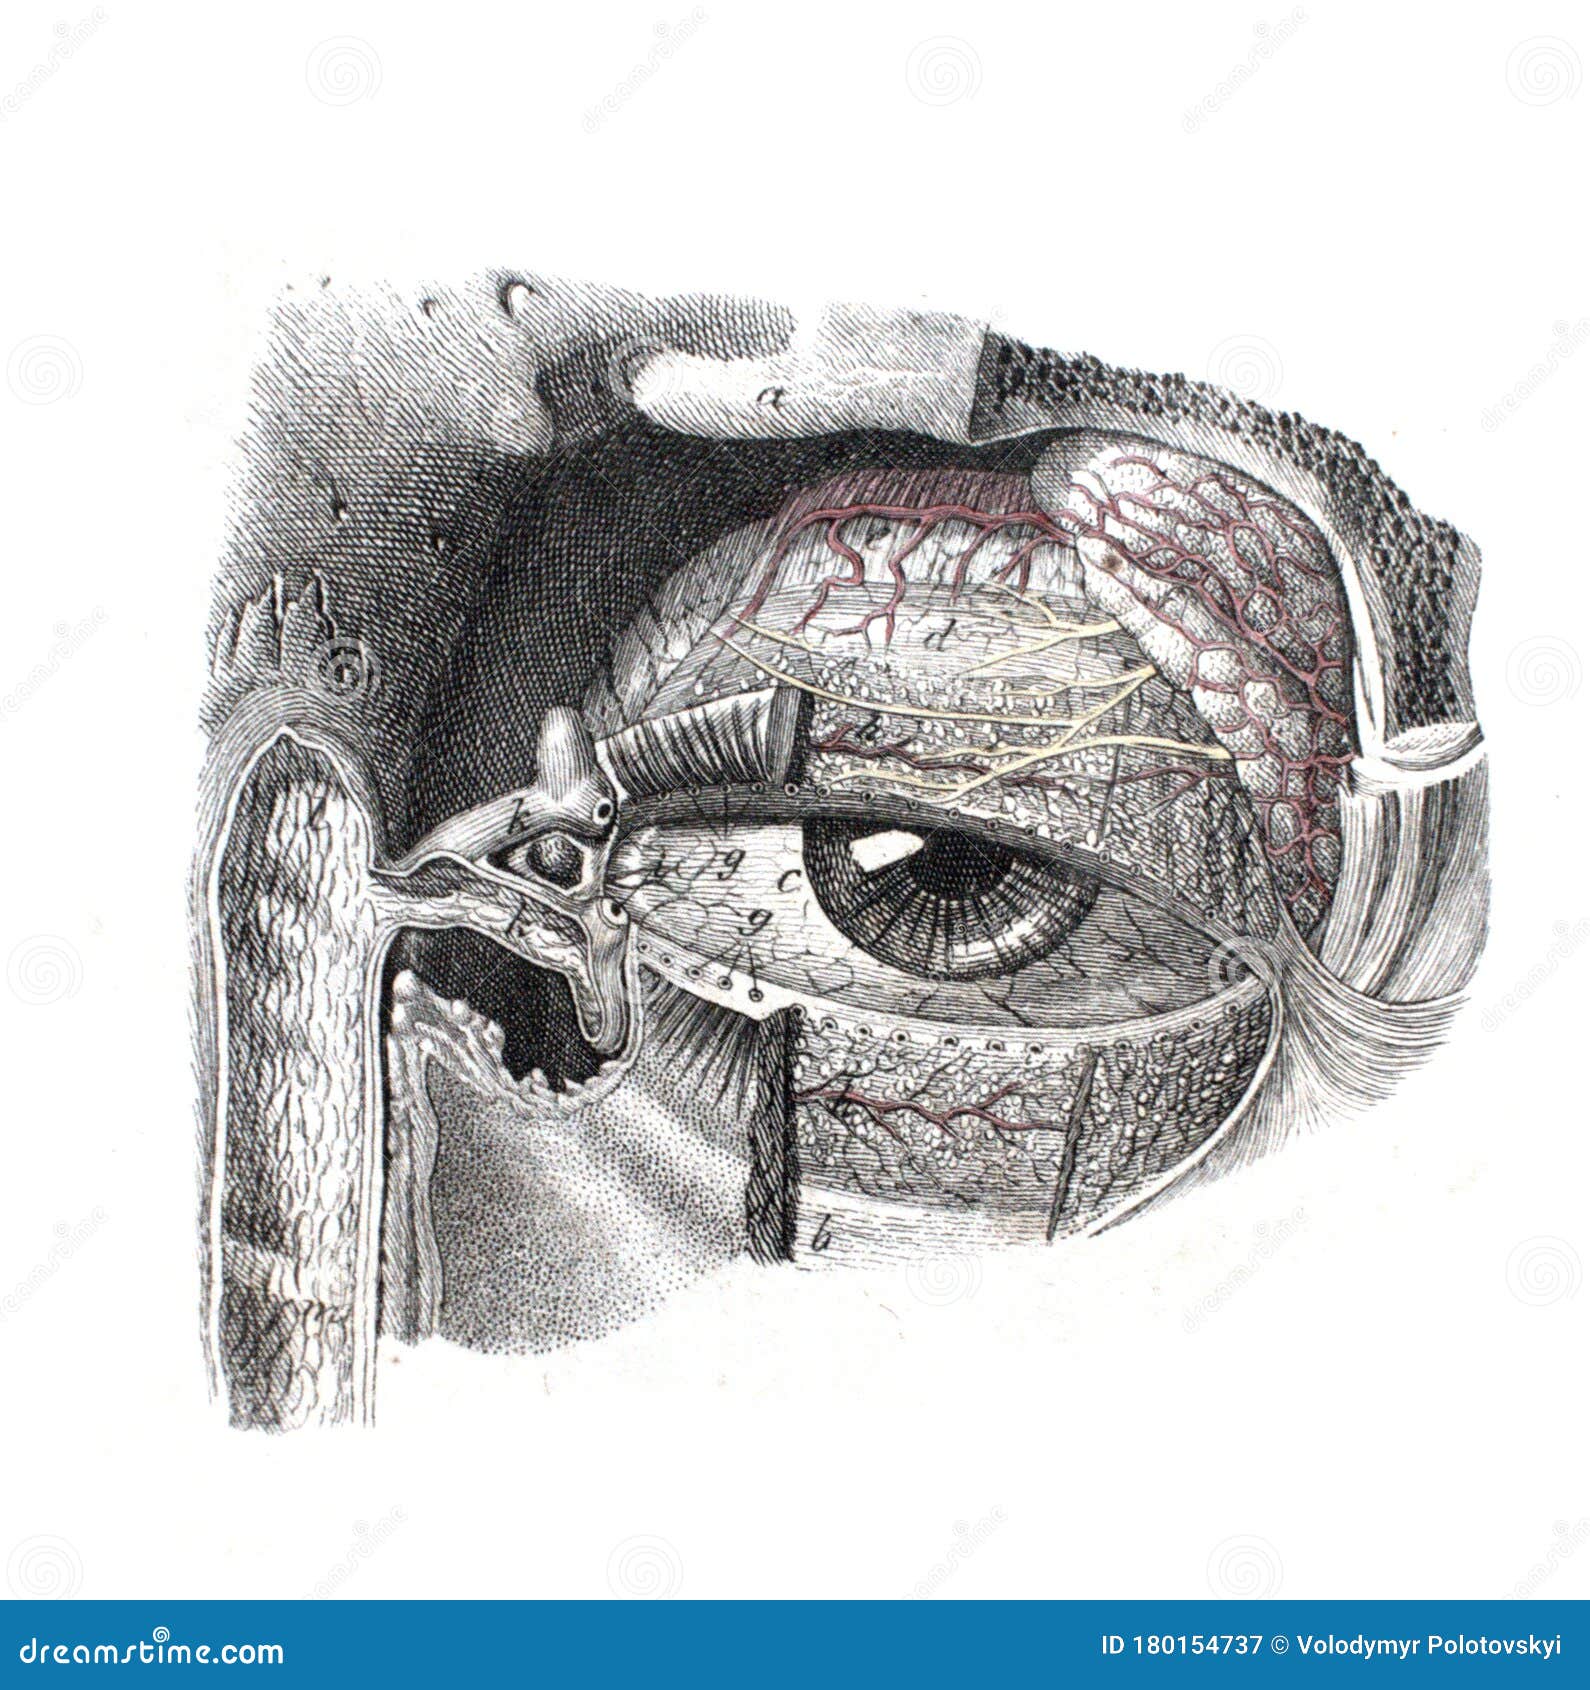 Human Eye Diagram Images - Free Download on Freepik